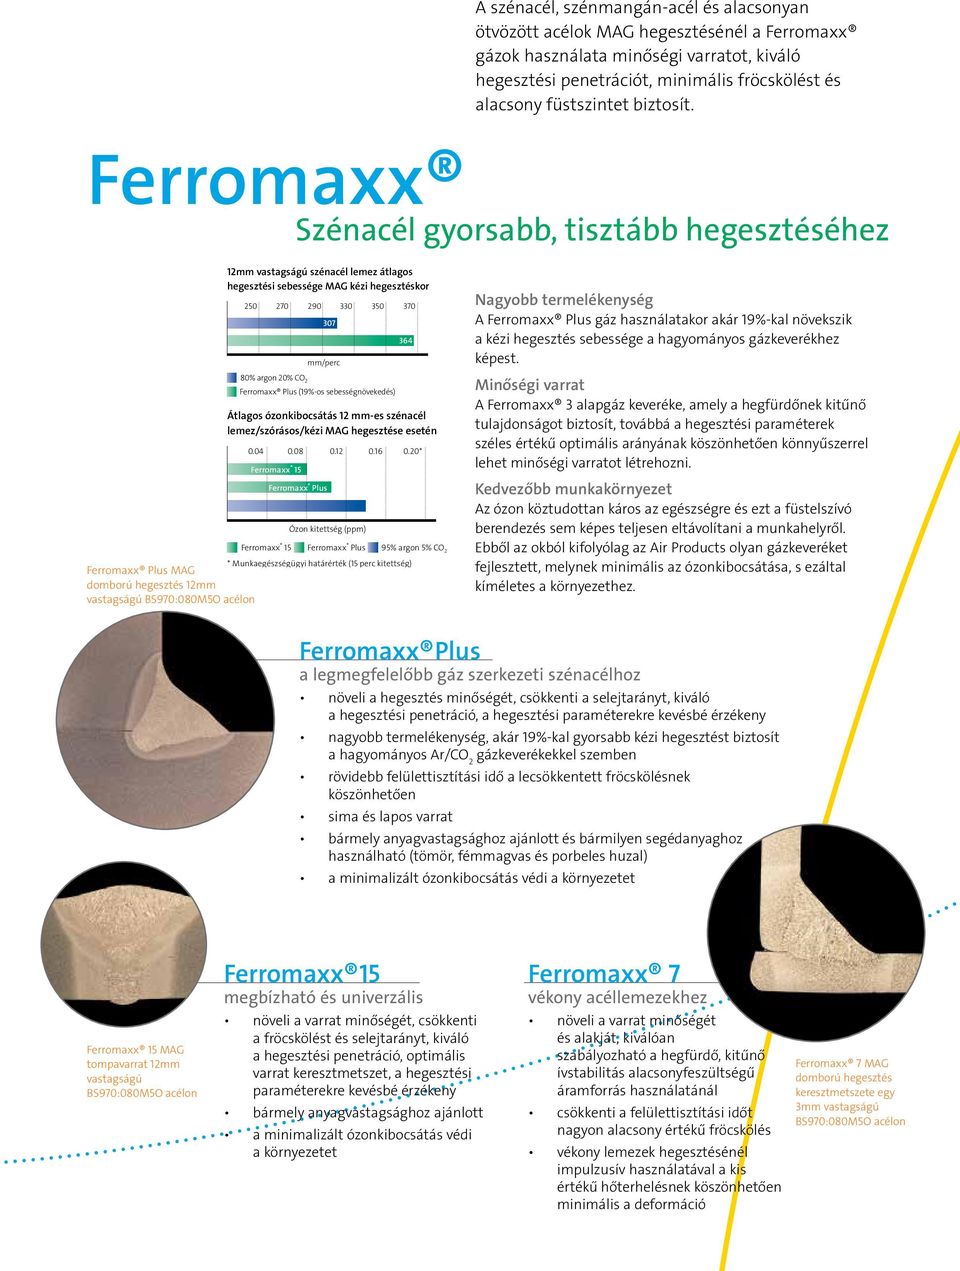 Ferromaxx Szénacél gyorsabb, tisztább hegesztéséhez 12mm vastagságú szénacél lemez átlagos hegesztési sebessége MAG kézi hegesztéskor 250 Átlagos ózonkibocsátás 12 mm-es szénacél lemez/szórásos/kézi